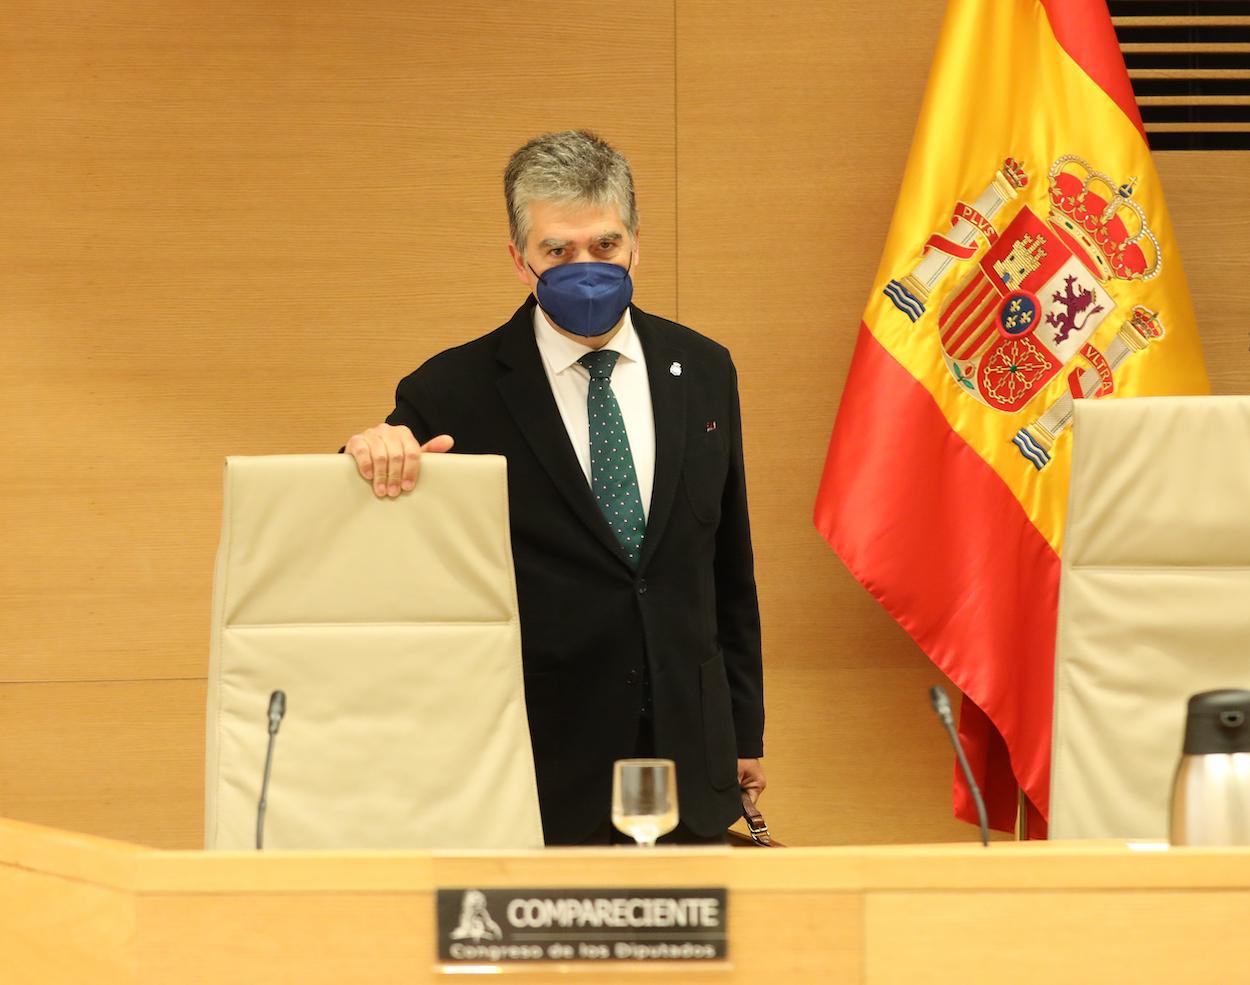 El ex director general de la Policía Ignacio Cosidó Gutiérrez a su llegada a la Comisión de Investigación sobre la utilización de medios de Interior para favorecer al PP